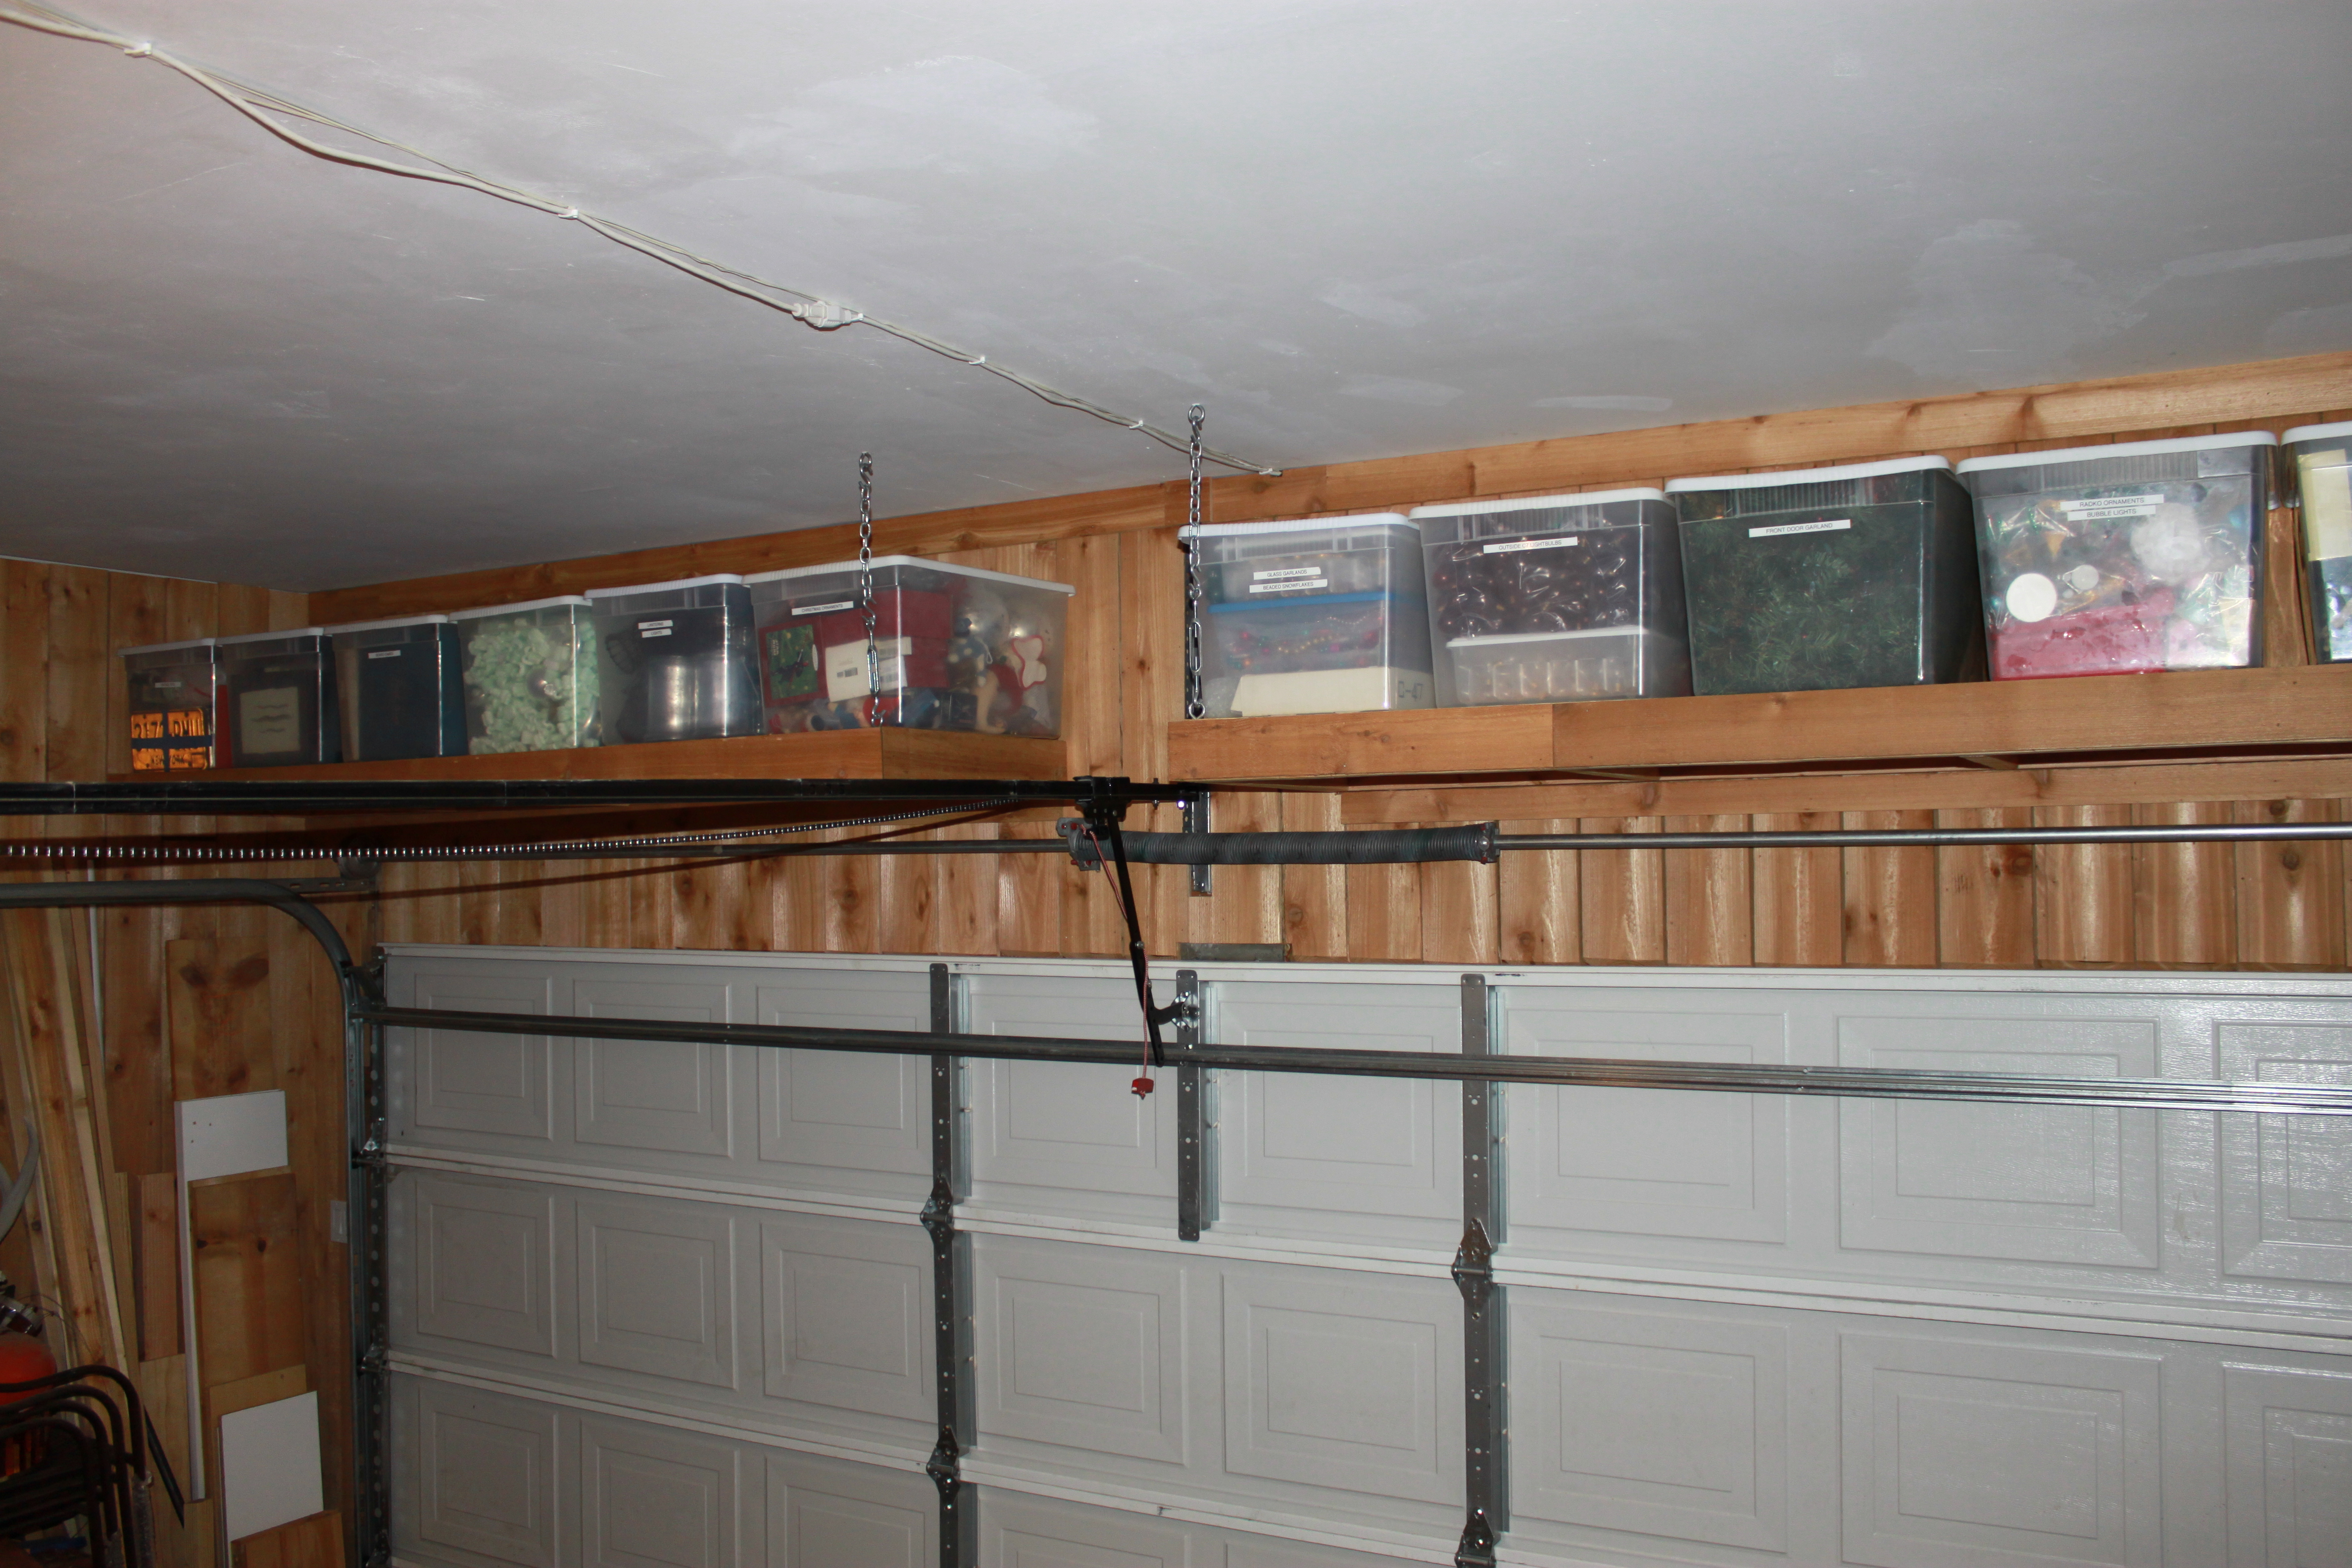 How to Build Garage Shelves : Wood Garage Shelves DIY